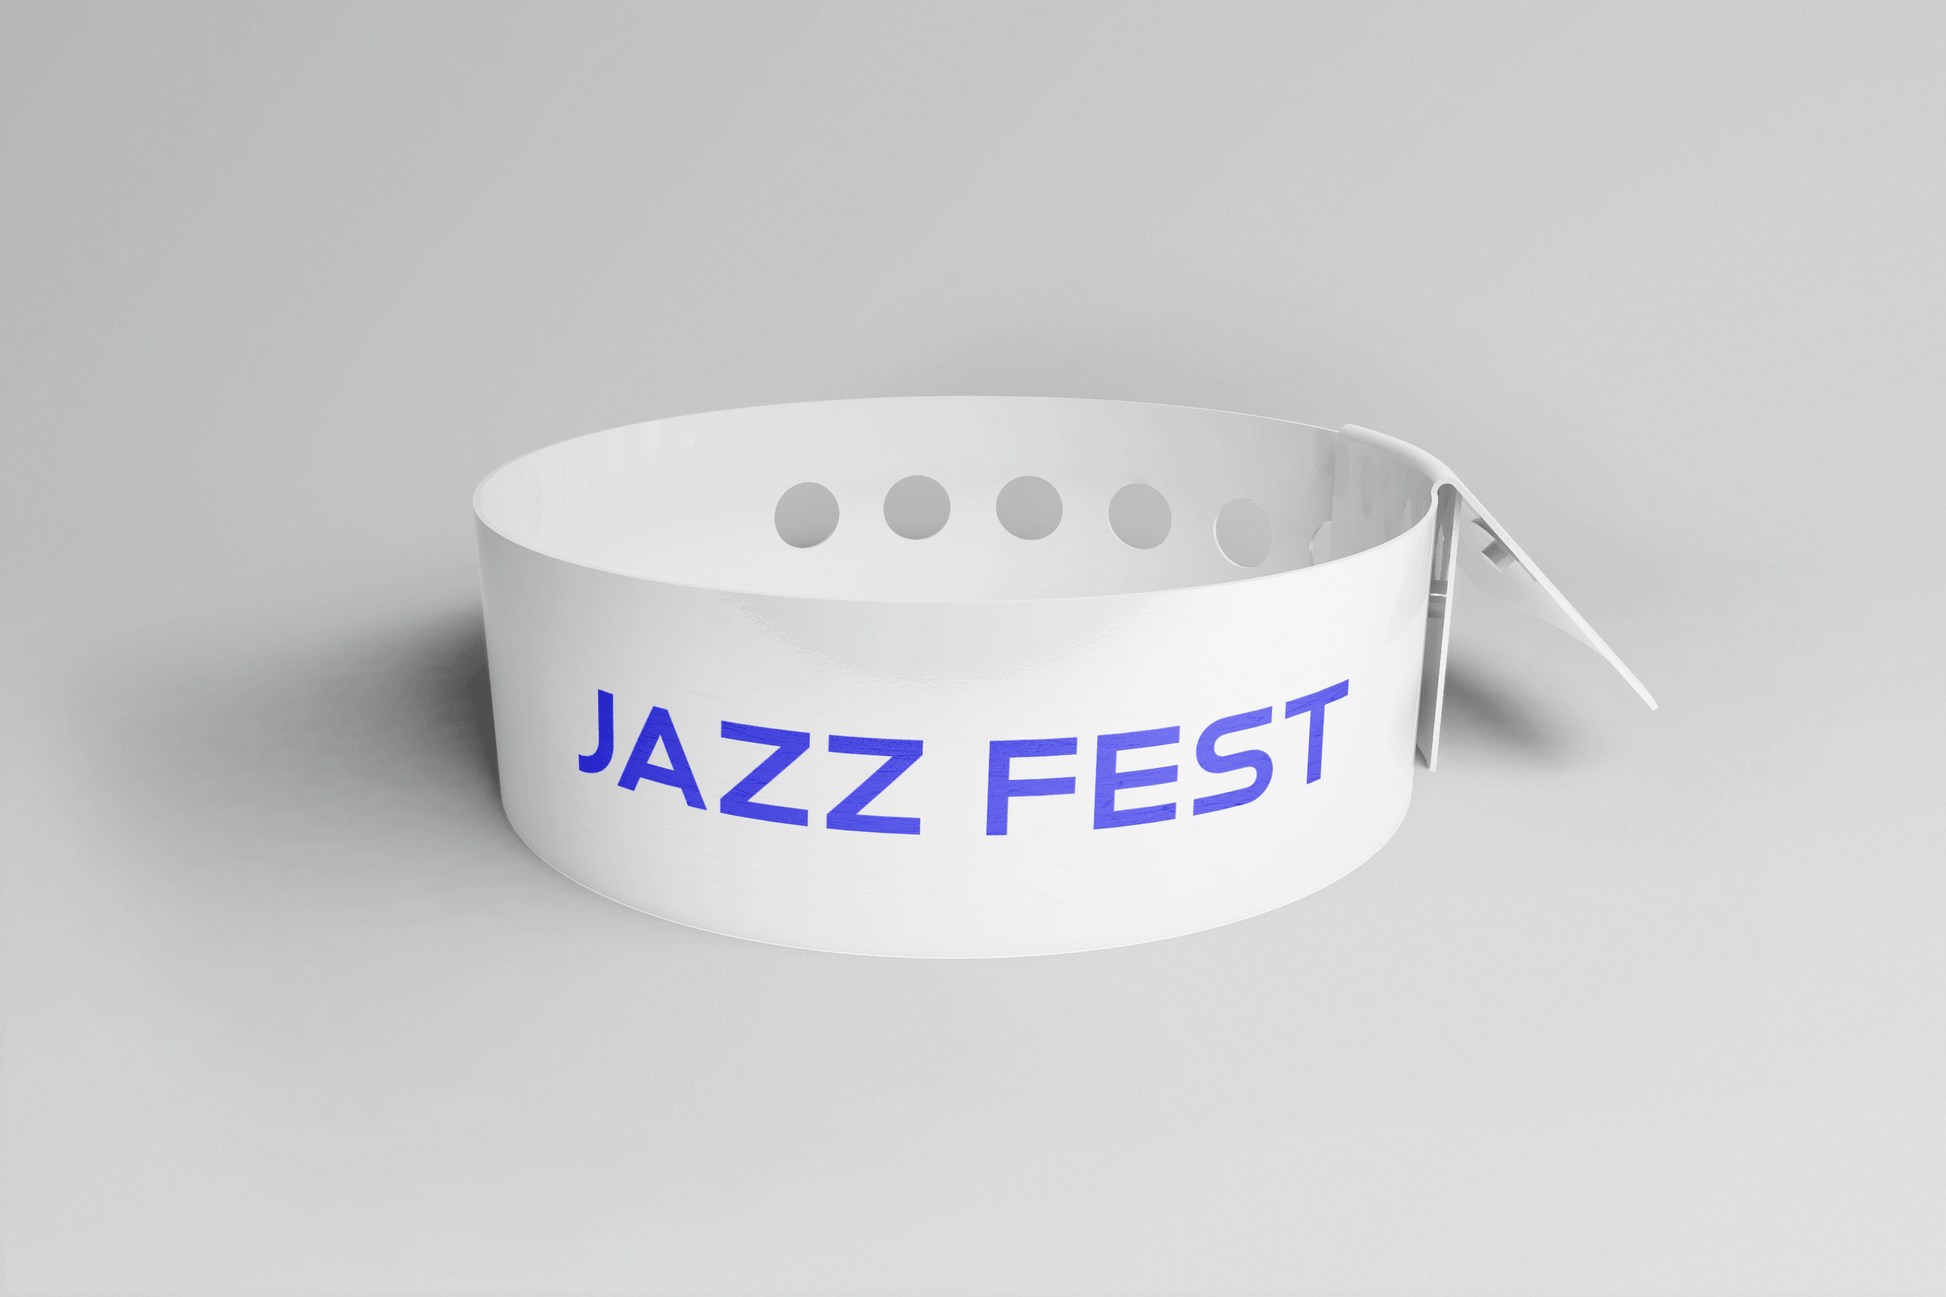 Ett rosa plastarmband L-print Design själv armband med ordet jazzfest på.